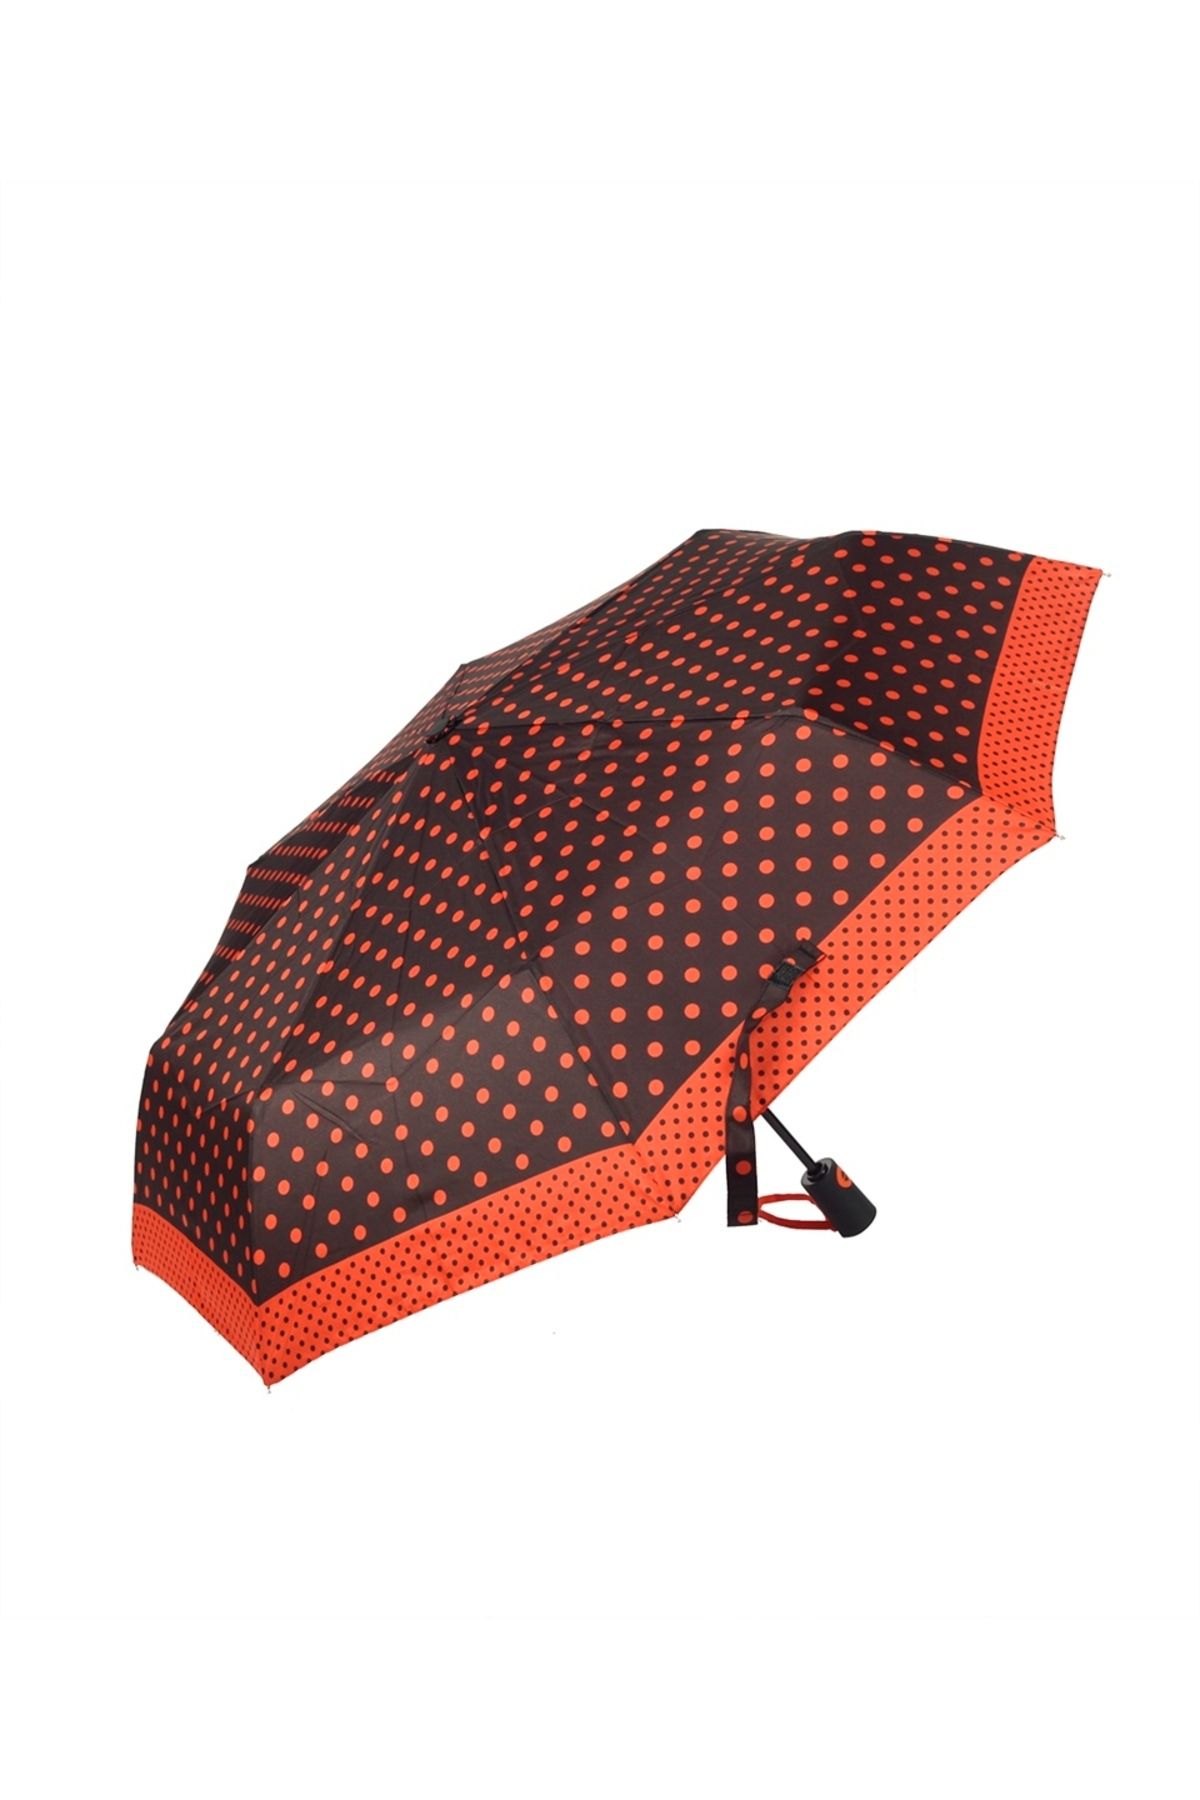 Marlux Kırmızı Puantiyeli Tam Otomatik Kadın Şemsiye M21mar707r002